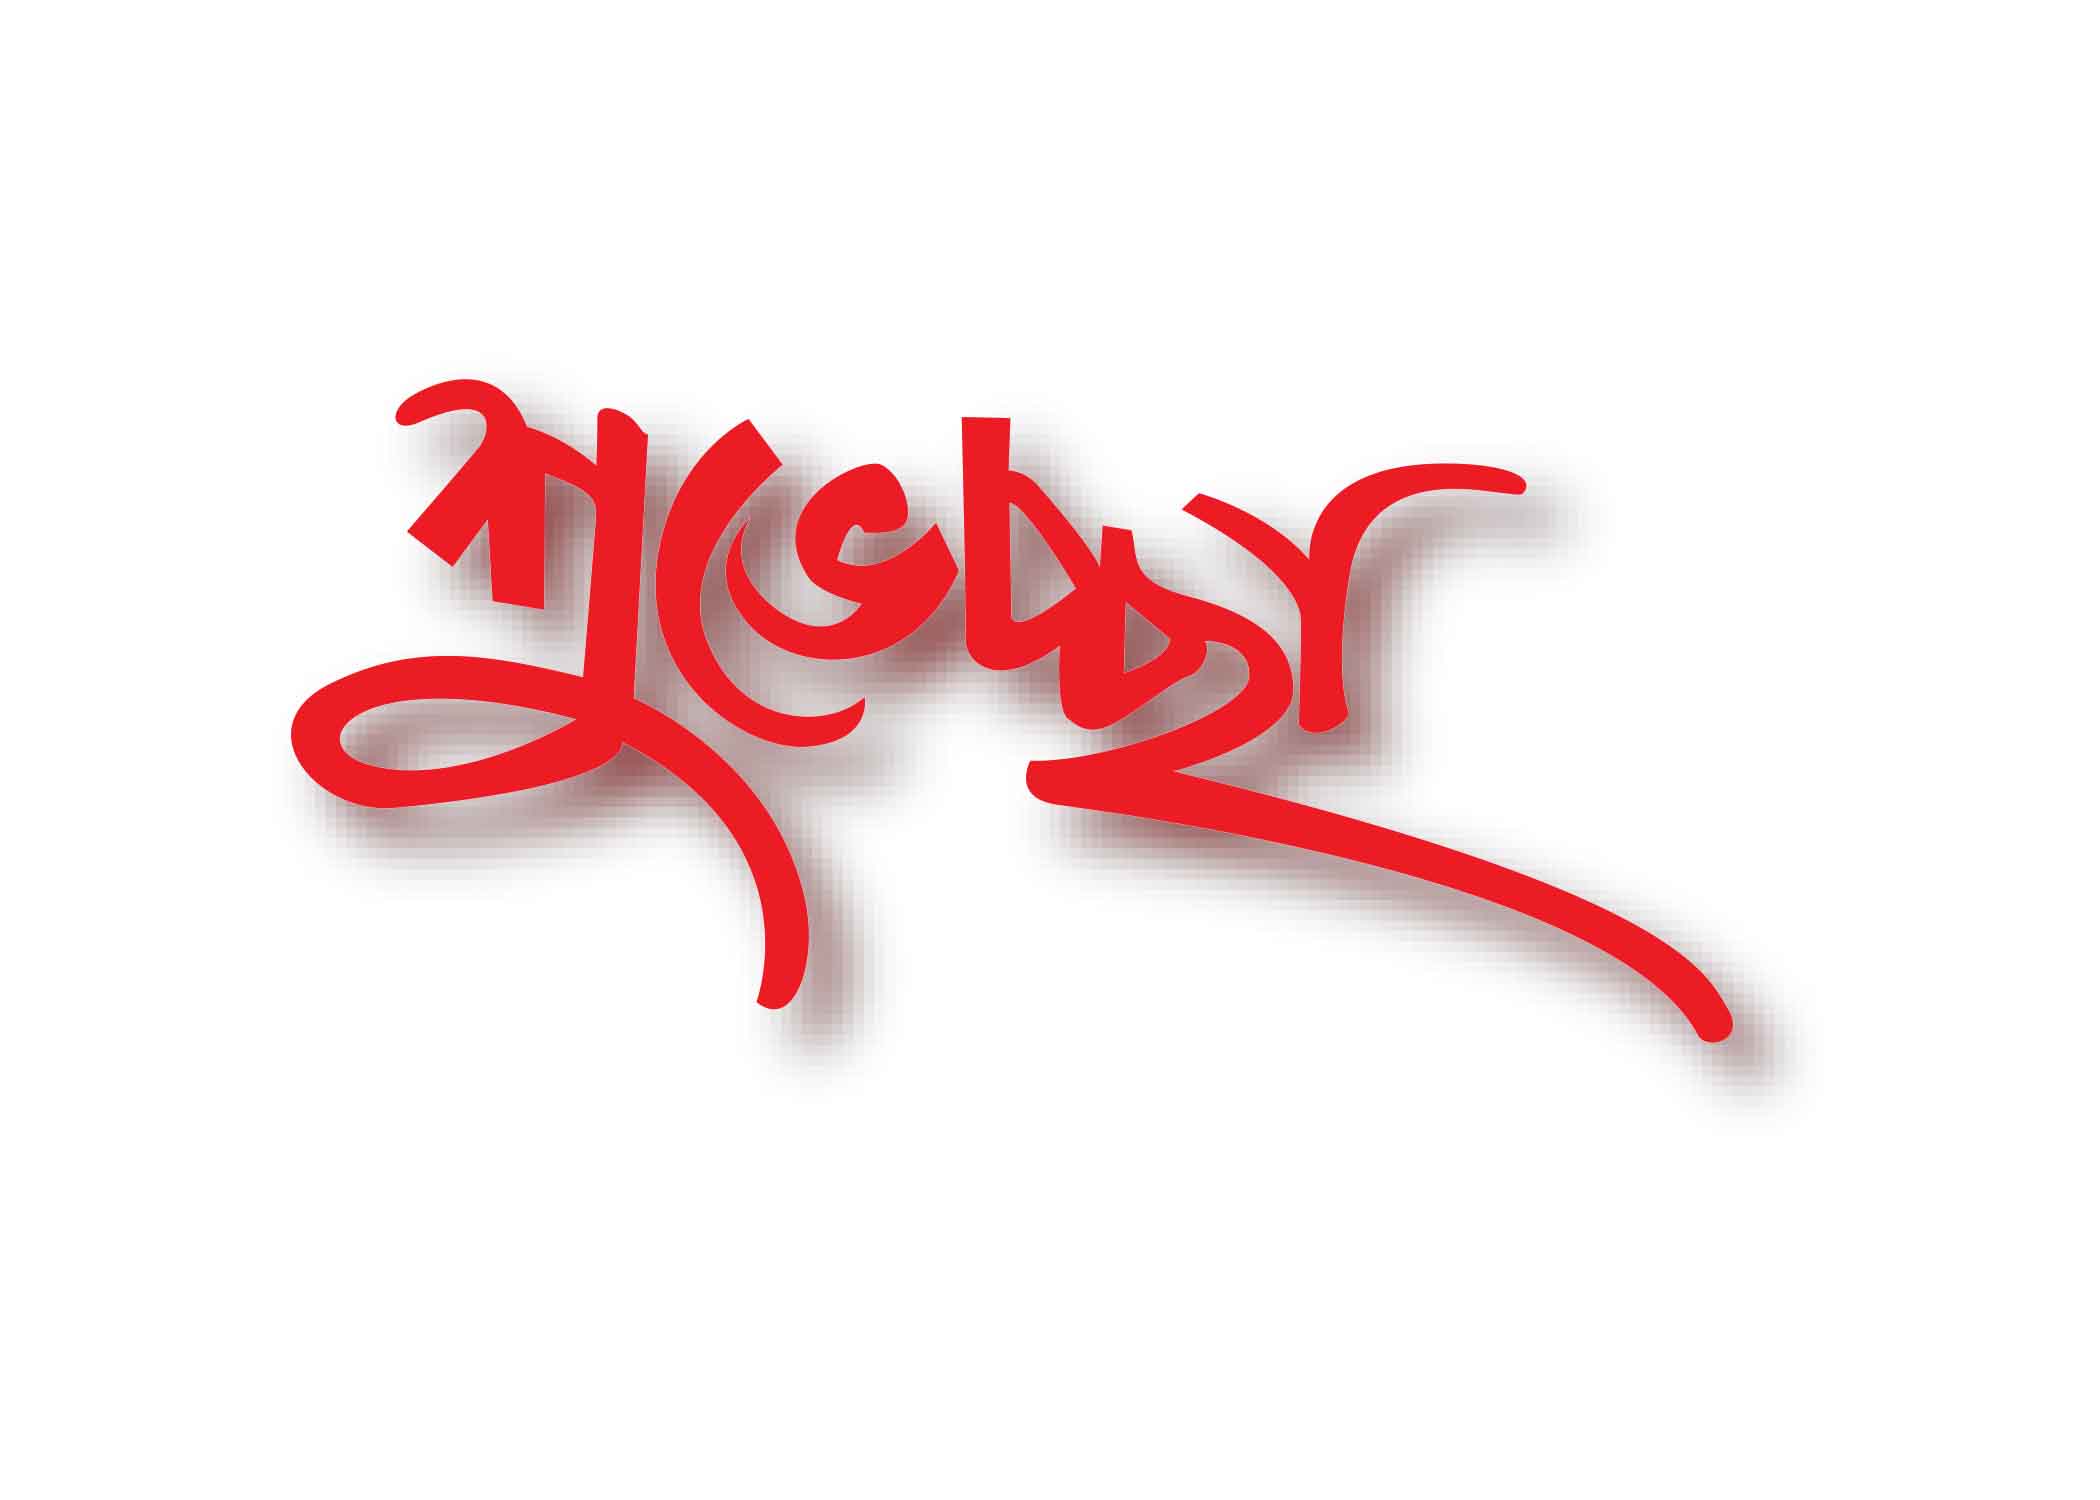 শুভেচ্ছা টাইপোগ্রাফি । Bangla Typhography PNG